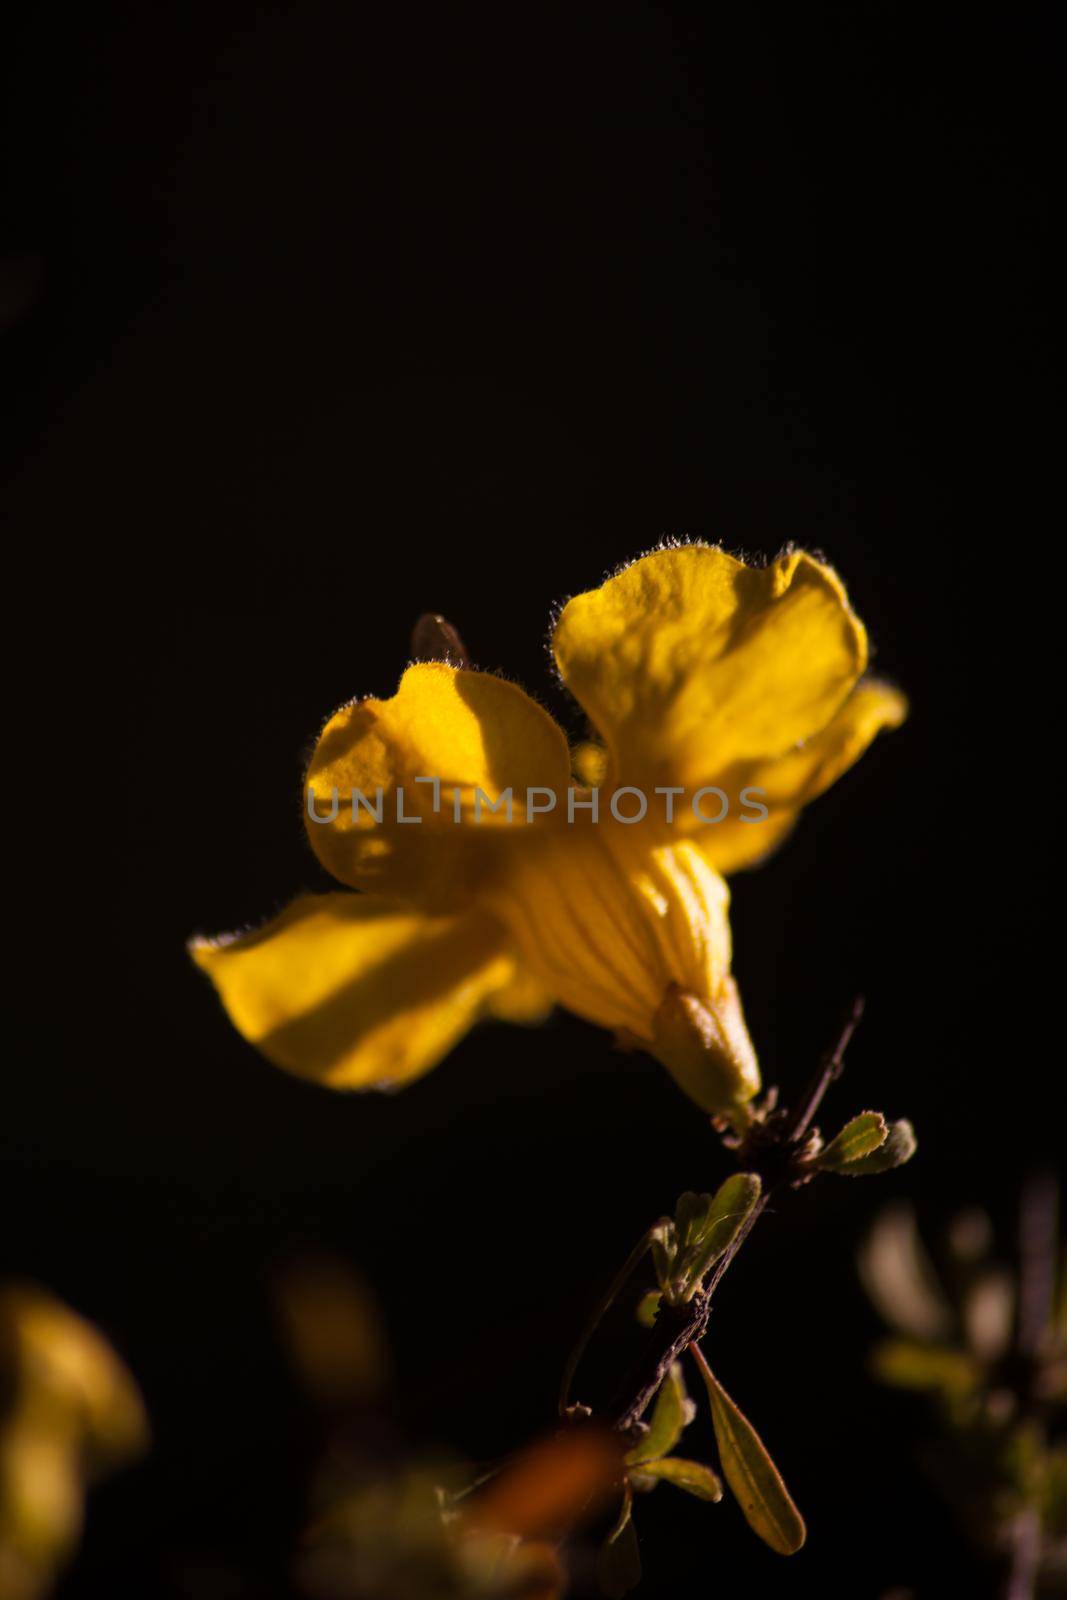 Flowers of the Karoo Gold Rhigozum obovatum Burch 14645 by kobus_peche